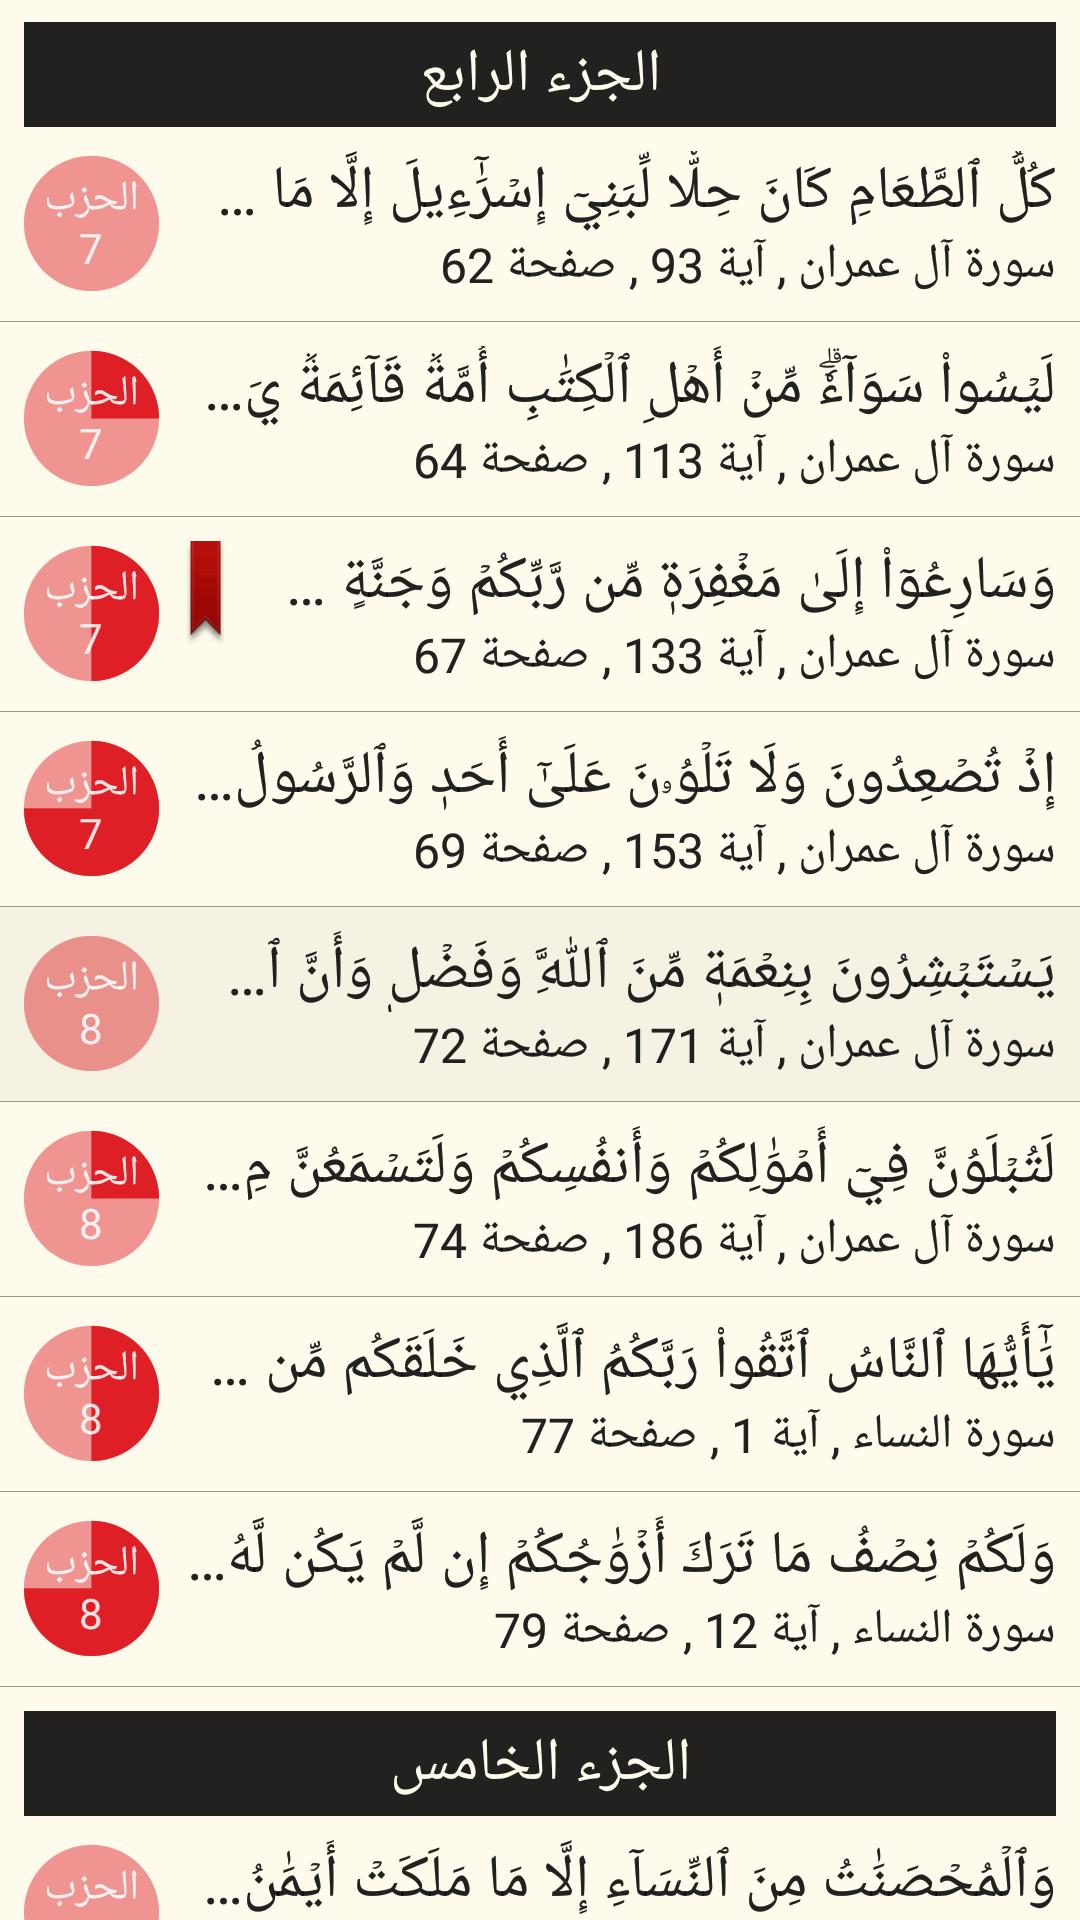 القرآن الكريم مع التفسير وميزات أخرى 6.1 Screenshot 5